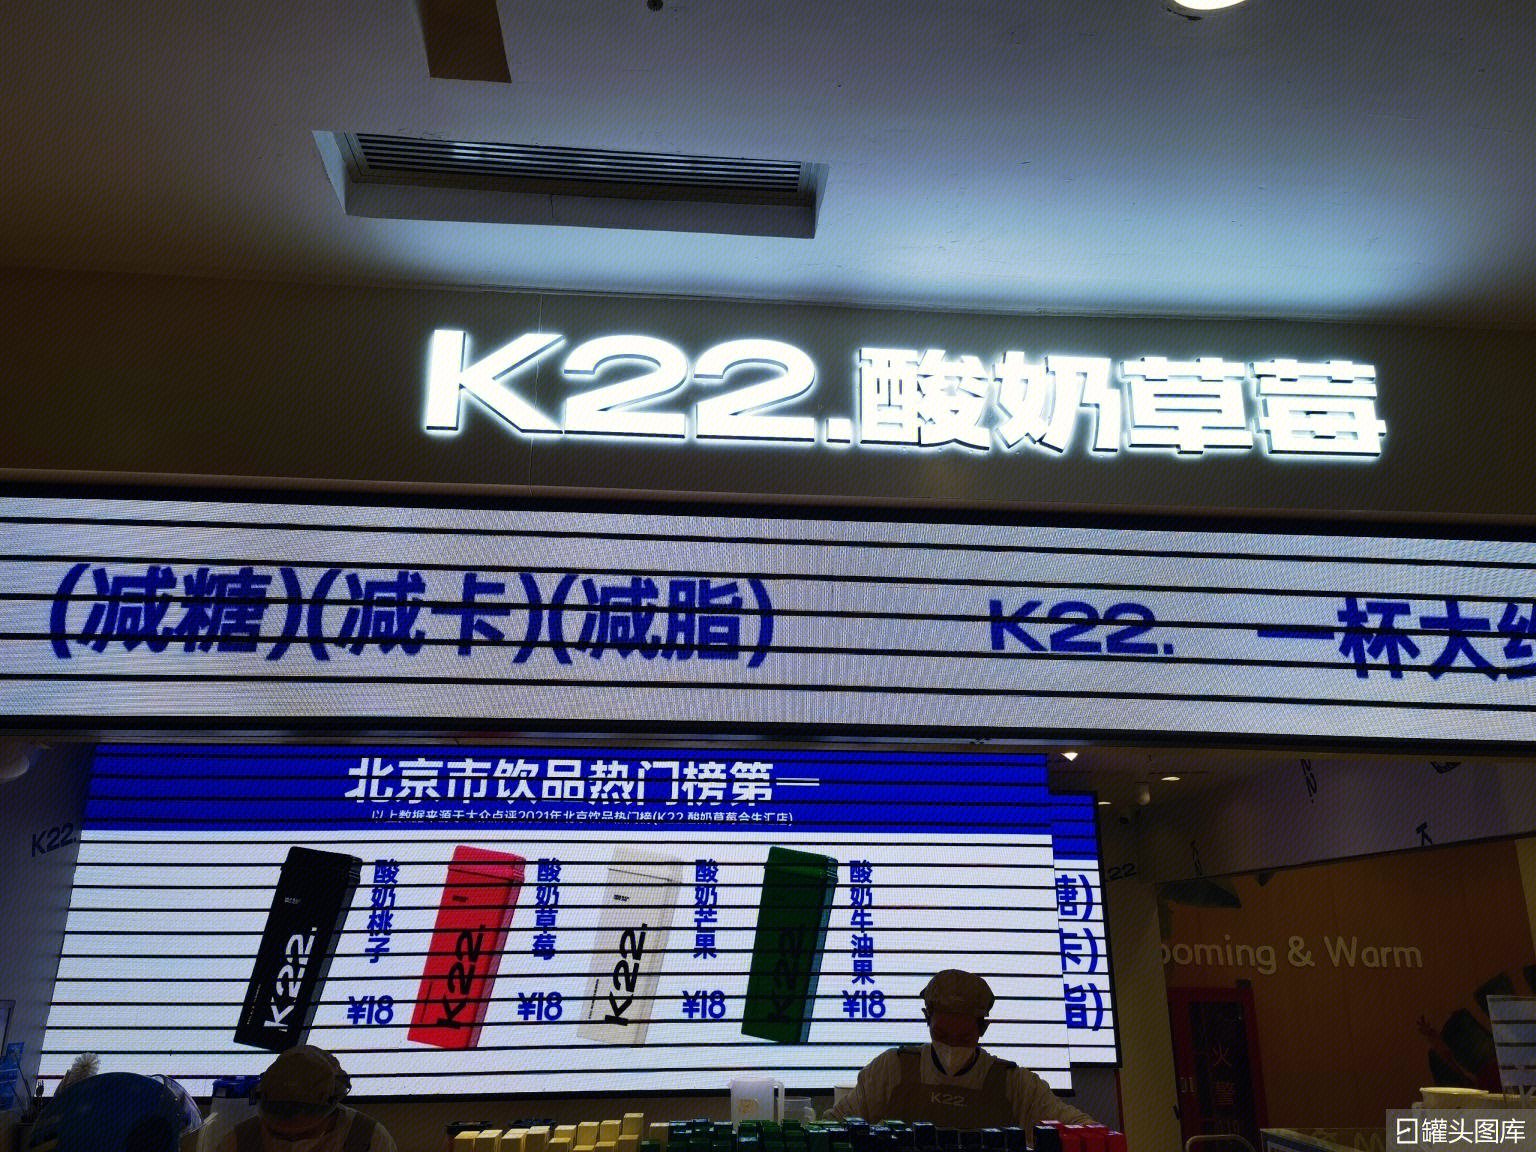 K22.酸奶草莓｜品牌视觉设计 on Behance